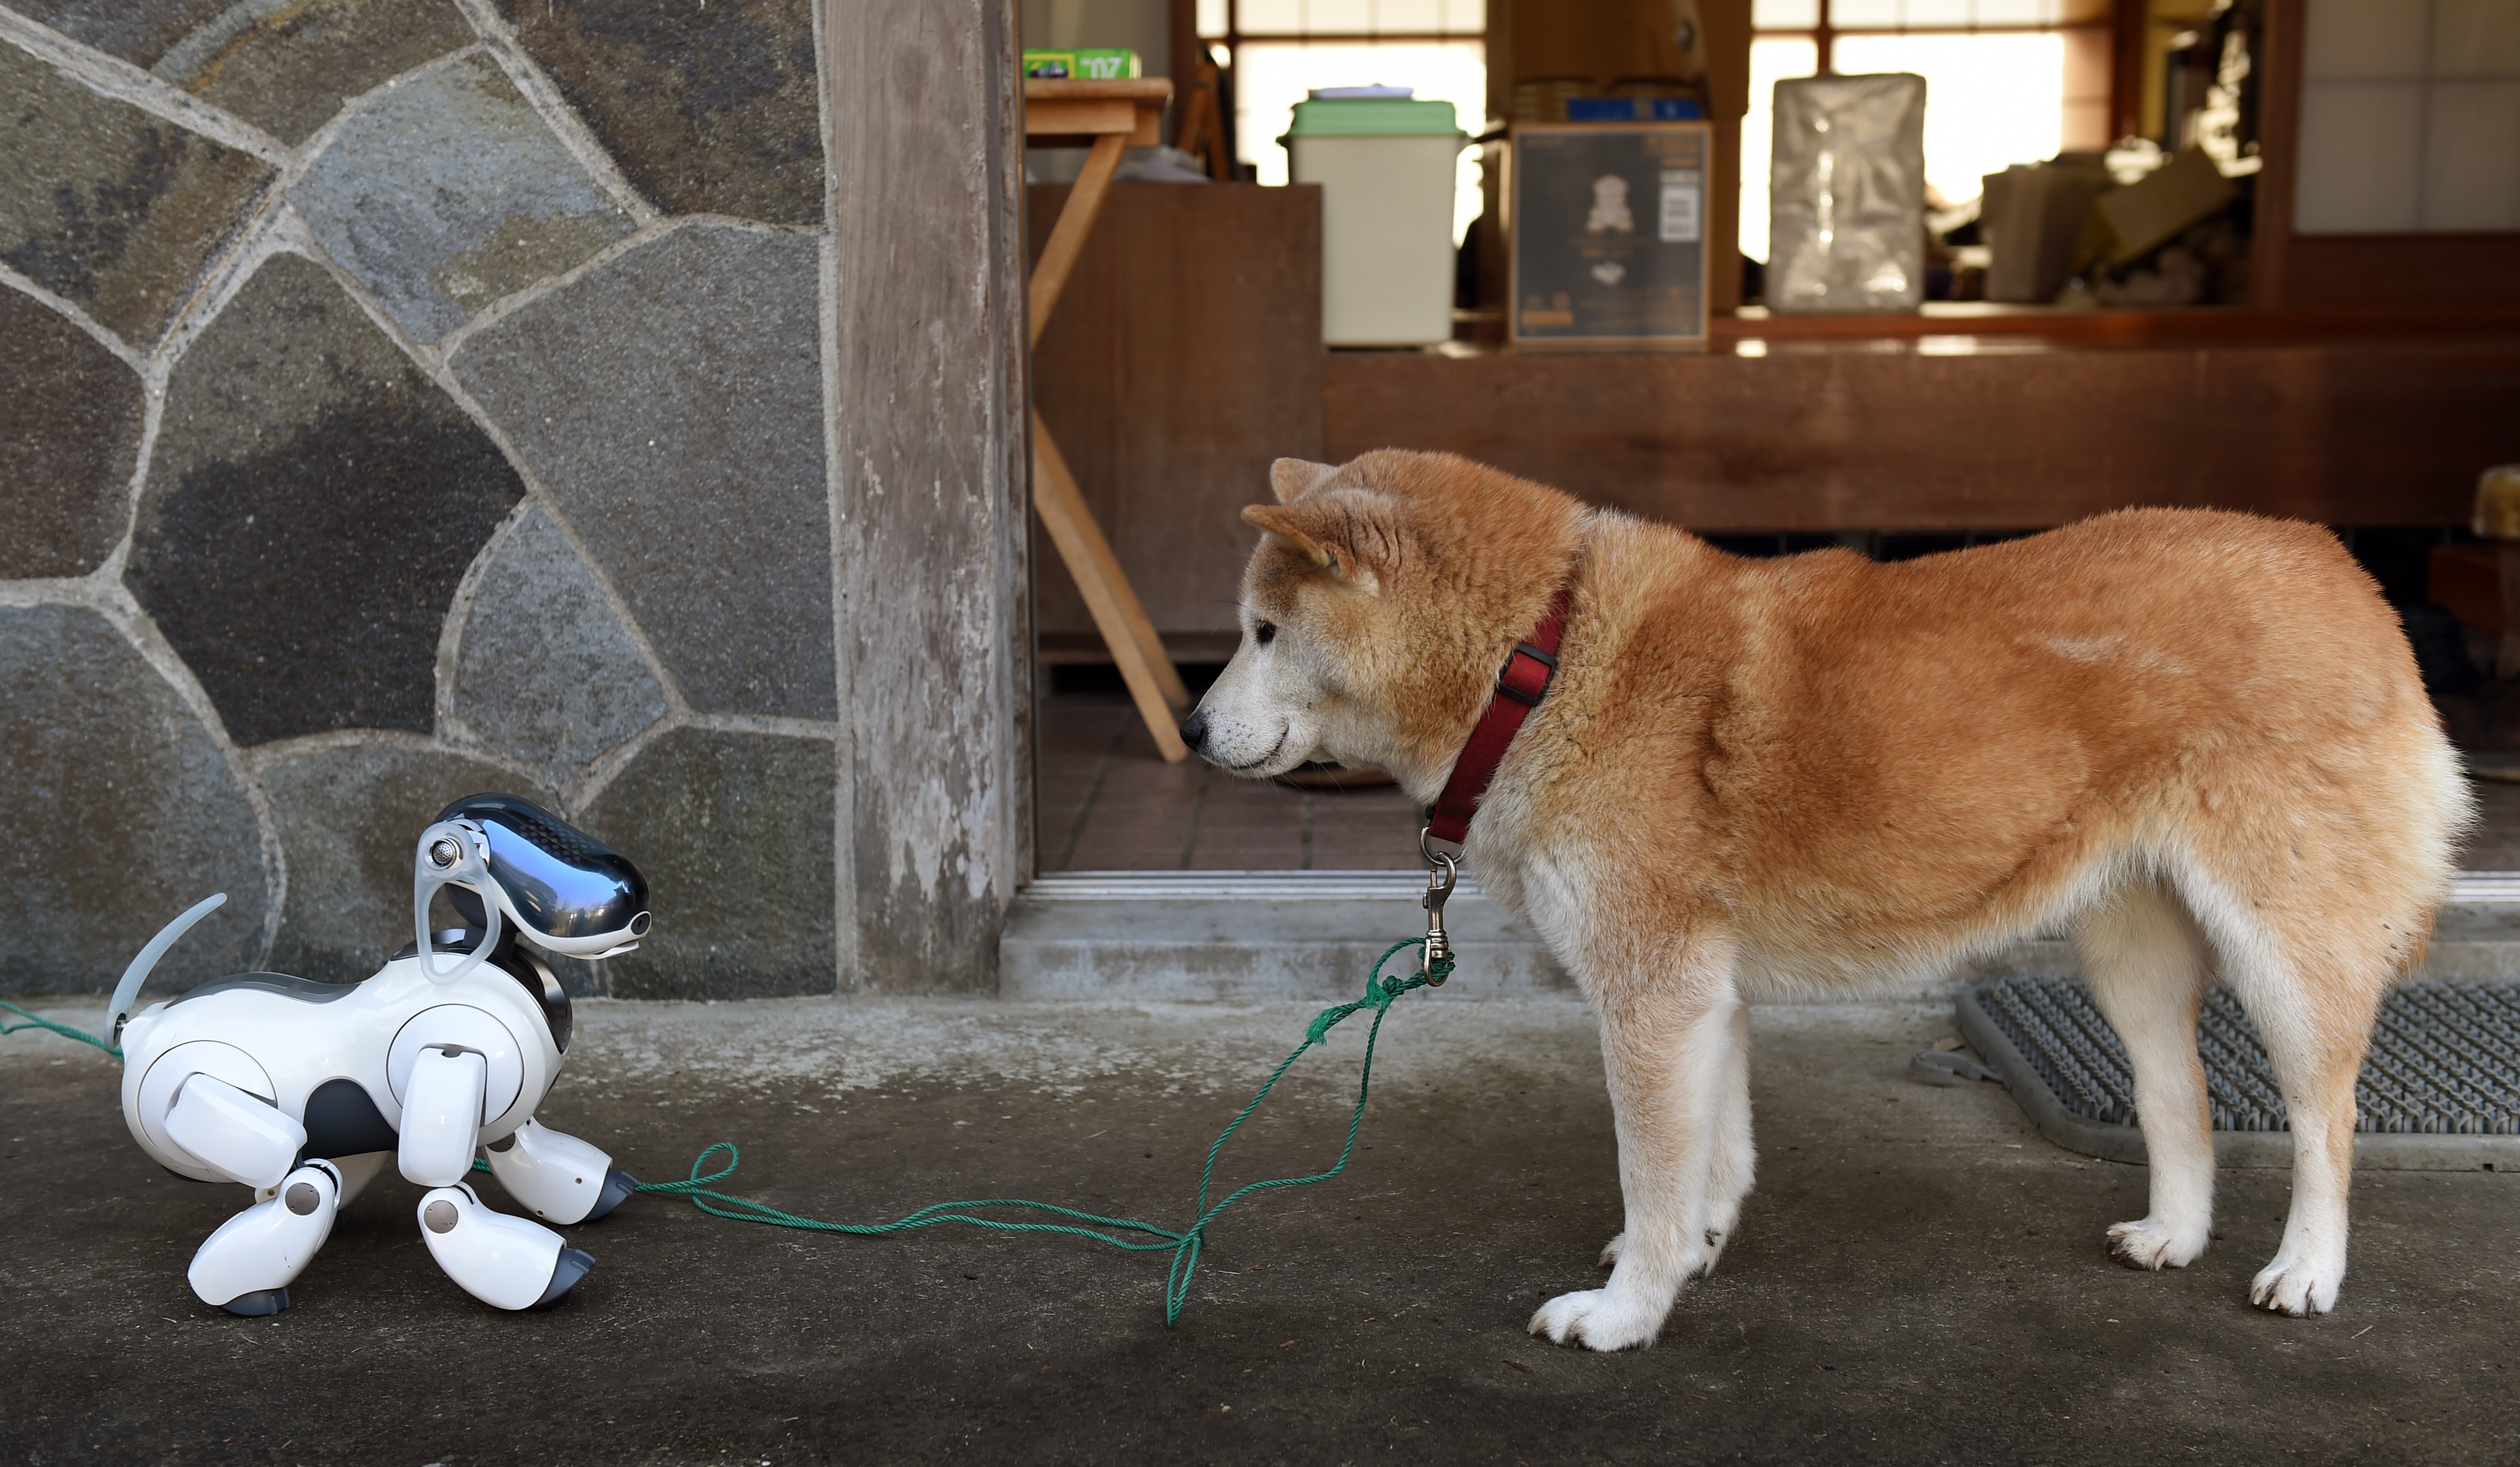 A Sony híres robotkutyája, AIBO és egy siba inu nagy találkozása